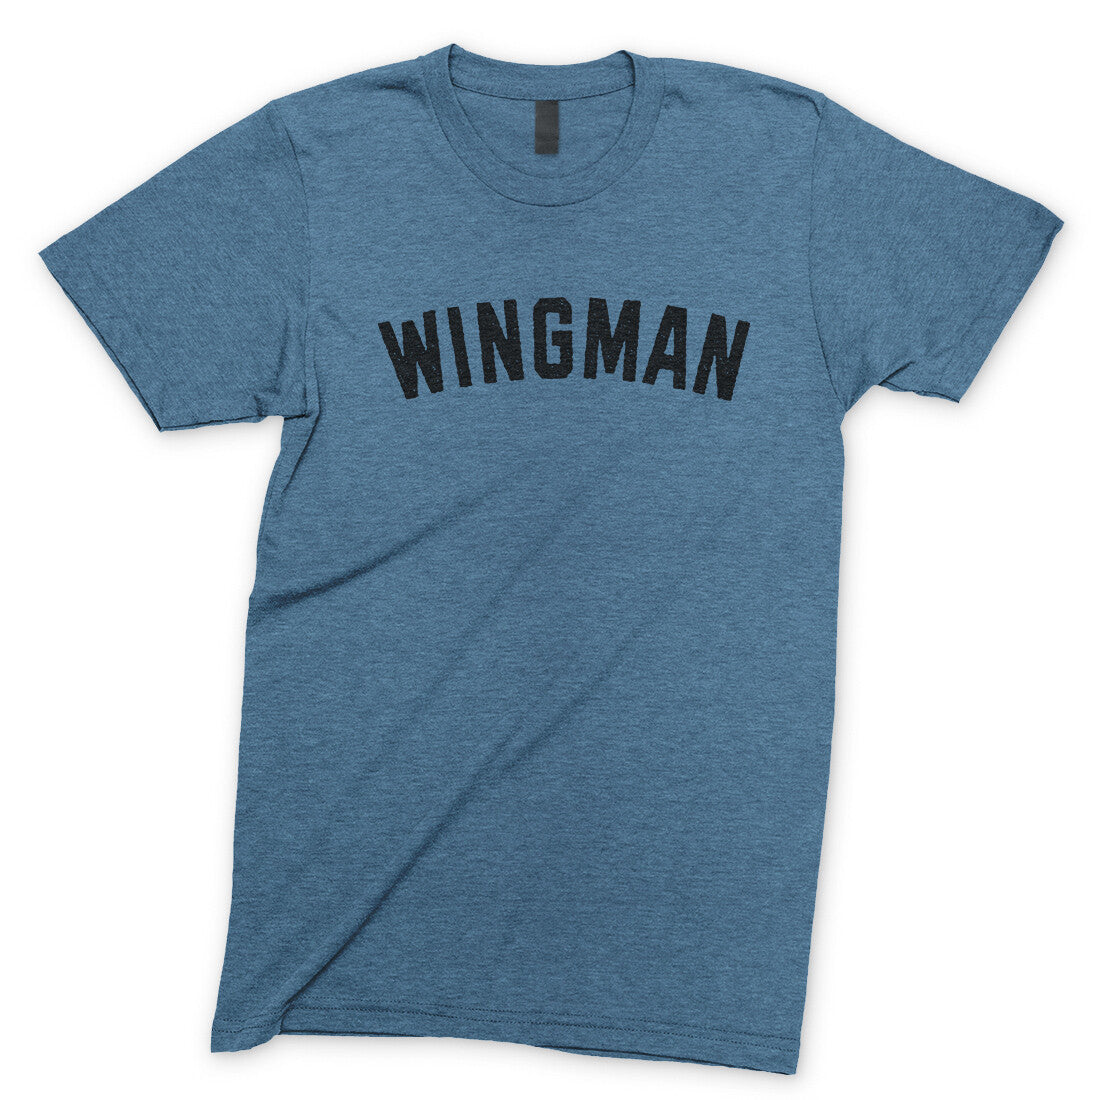 Wingman in Heather Indigo Color